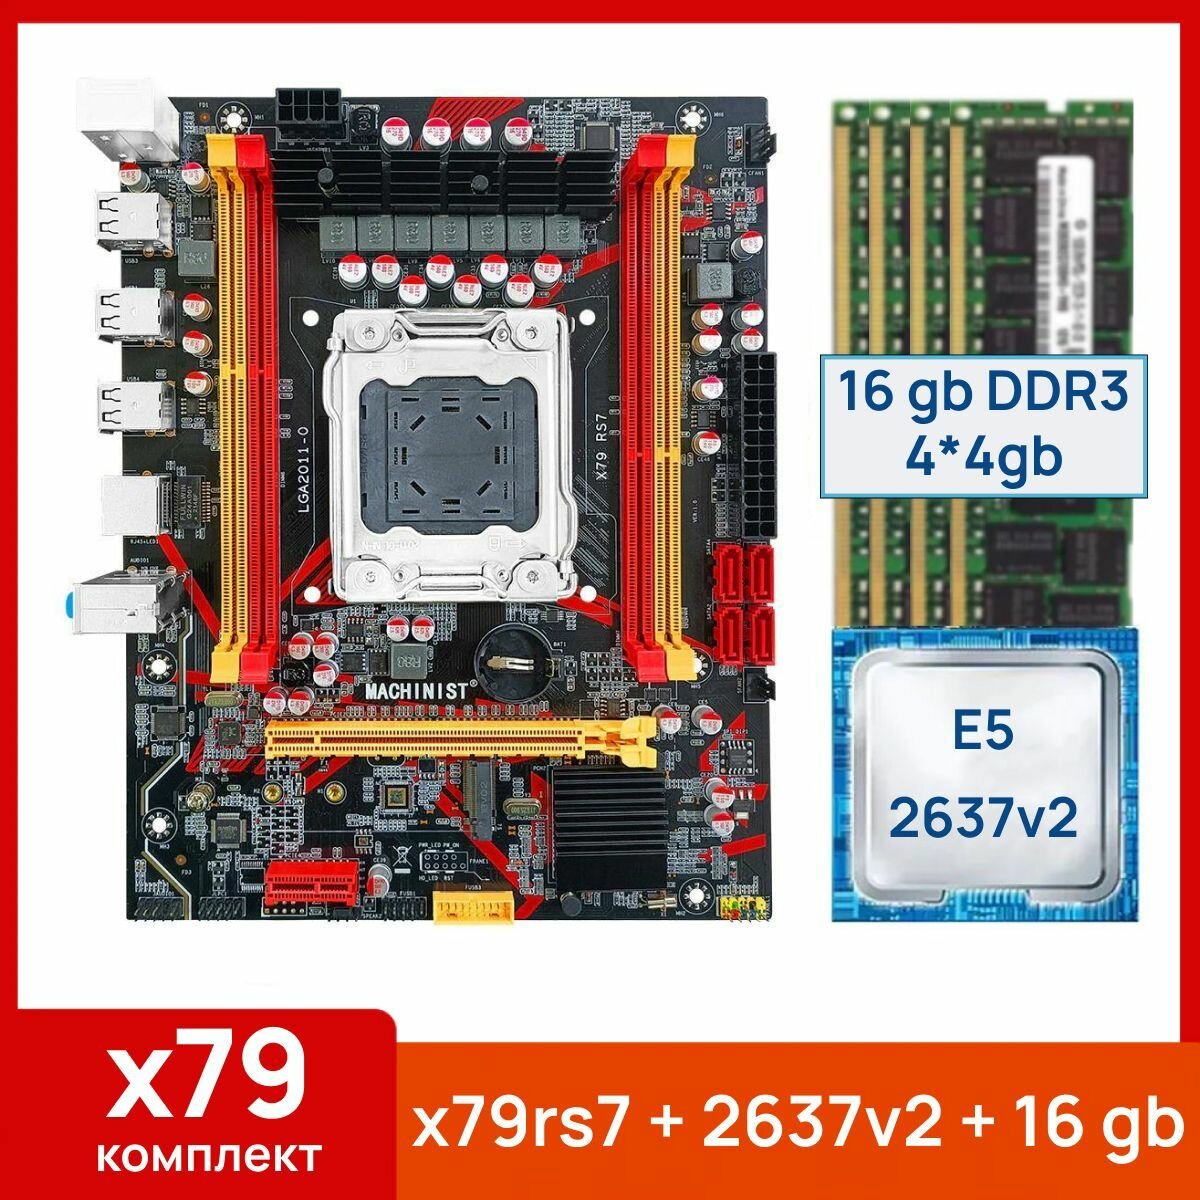 Комплект: Материнская плата Machinist RS-7 + Процессор Xeon E5 2637v2 + 16 gb(4x4gb) DDR3 серверная